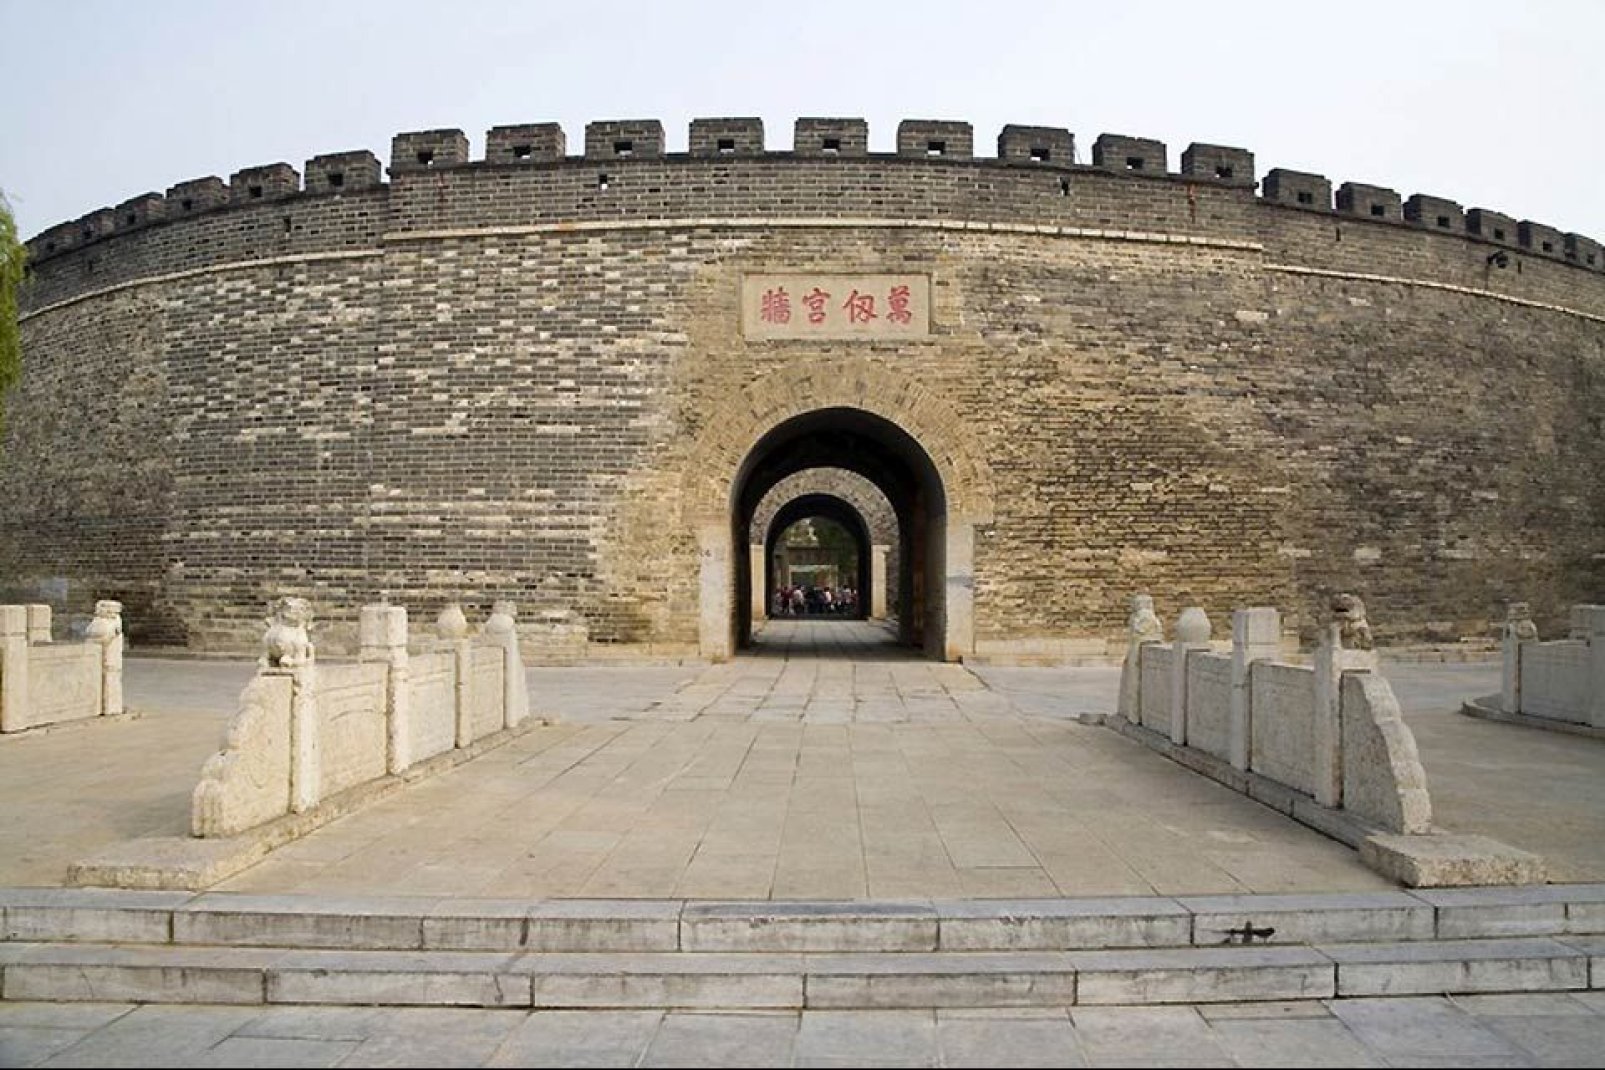 Dietro a questa fortezza si trovano il tempio, la residenza e il cimitero dove Confucio fu sepolto.